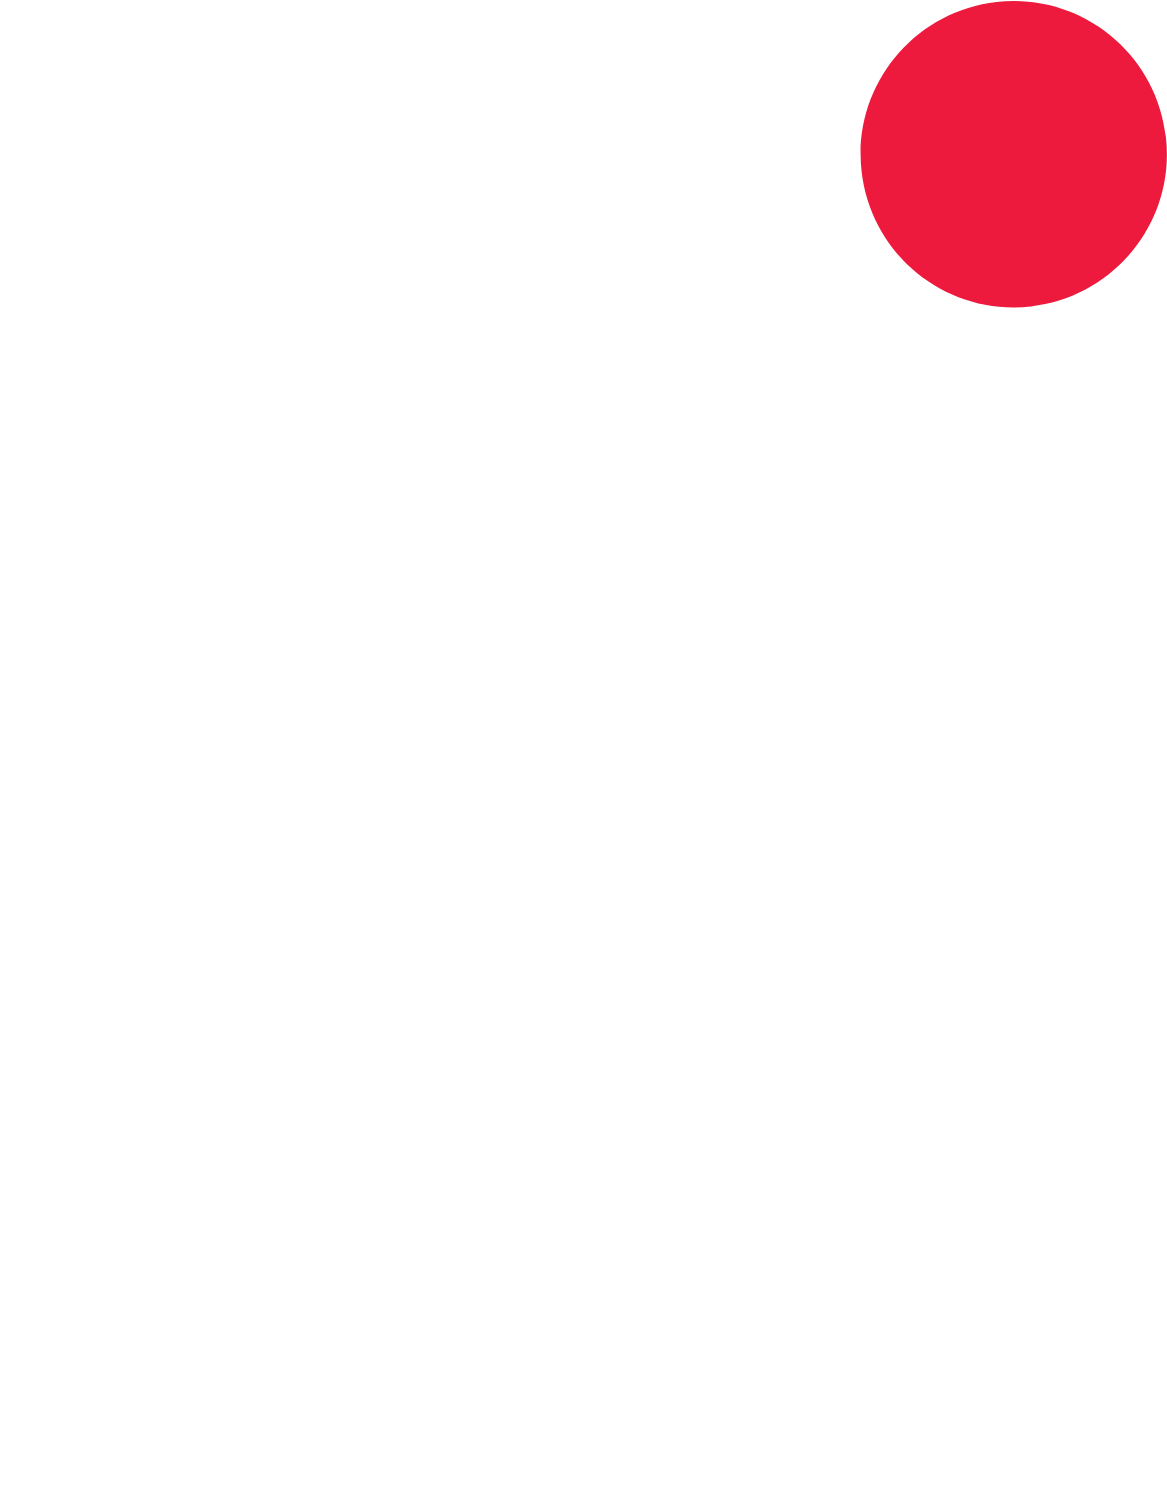 Singtel logo pour fonds sombres (PNG transparent)